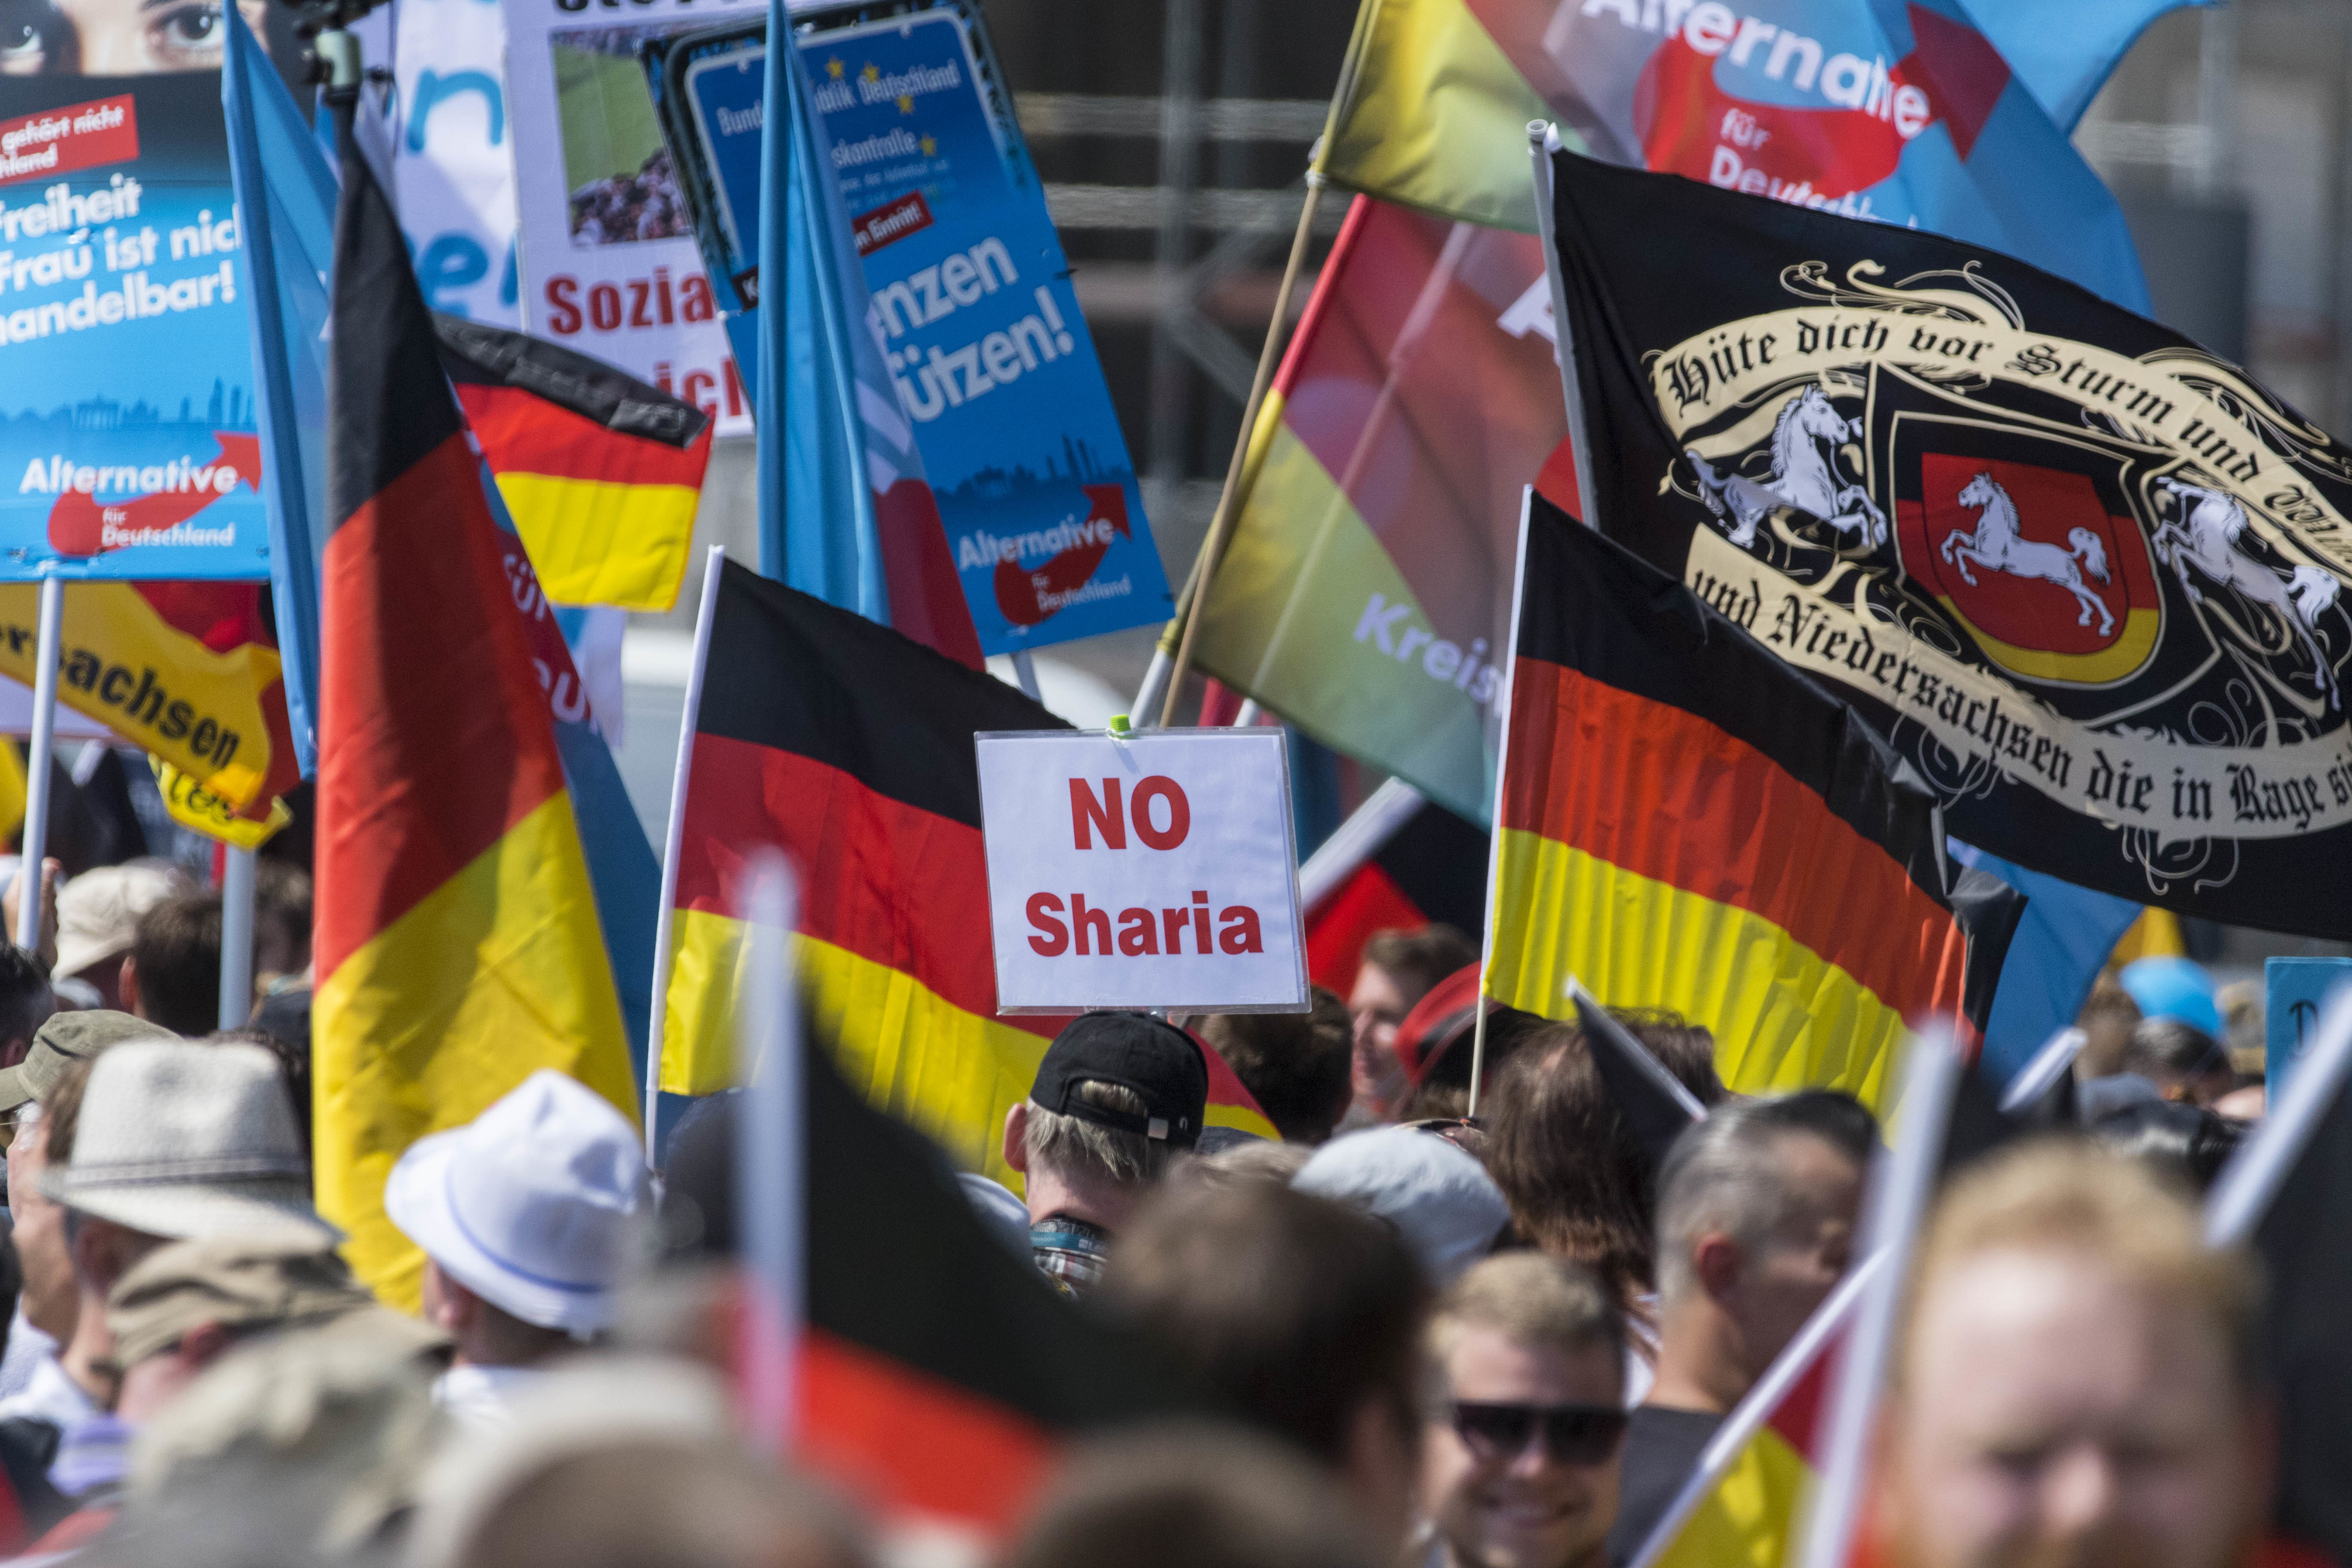 A német bíróság szerint tényleges veszélyt jelenthet a szélsőjobboldali AfD, jogszerűen lehet megfigyelni a tagjait